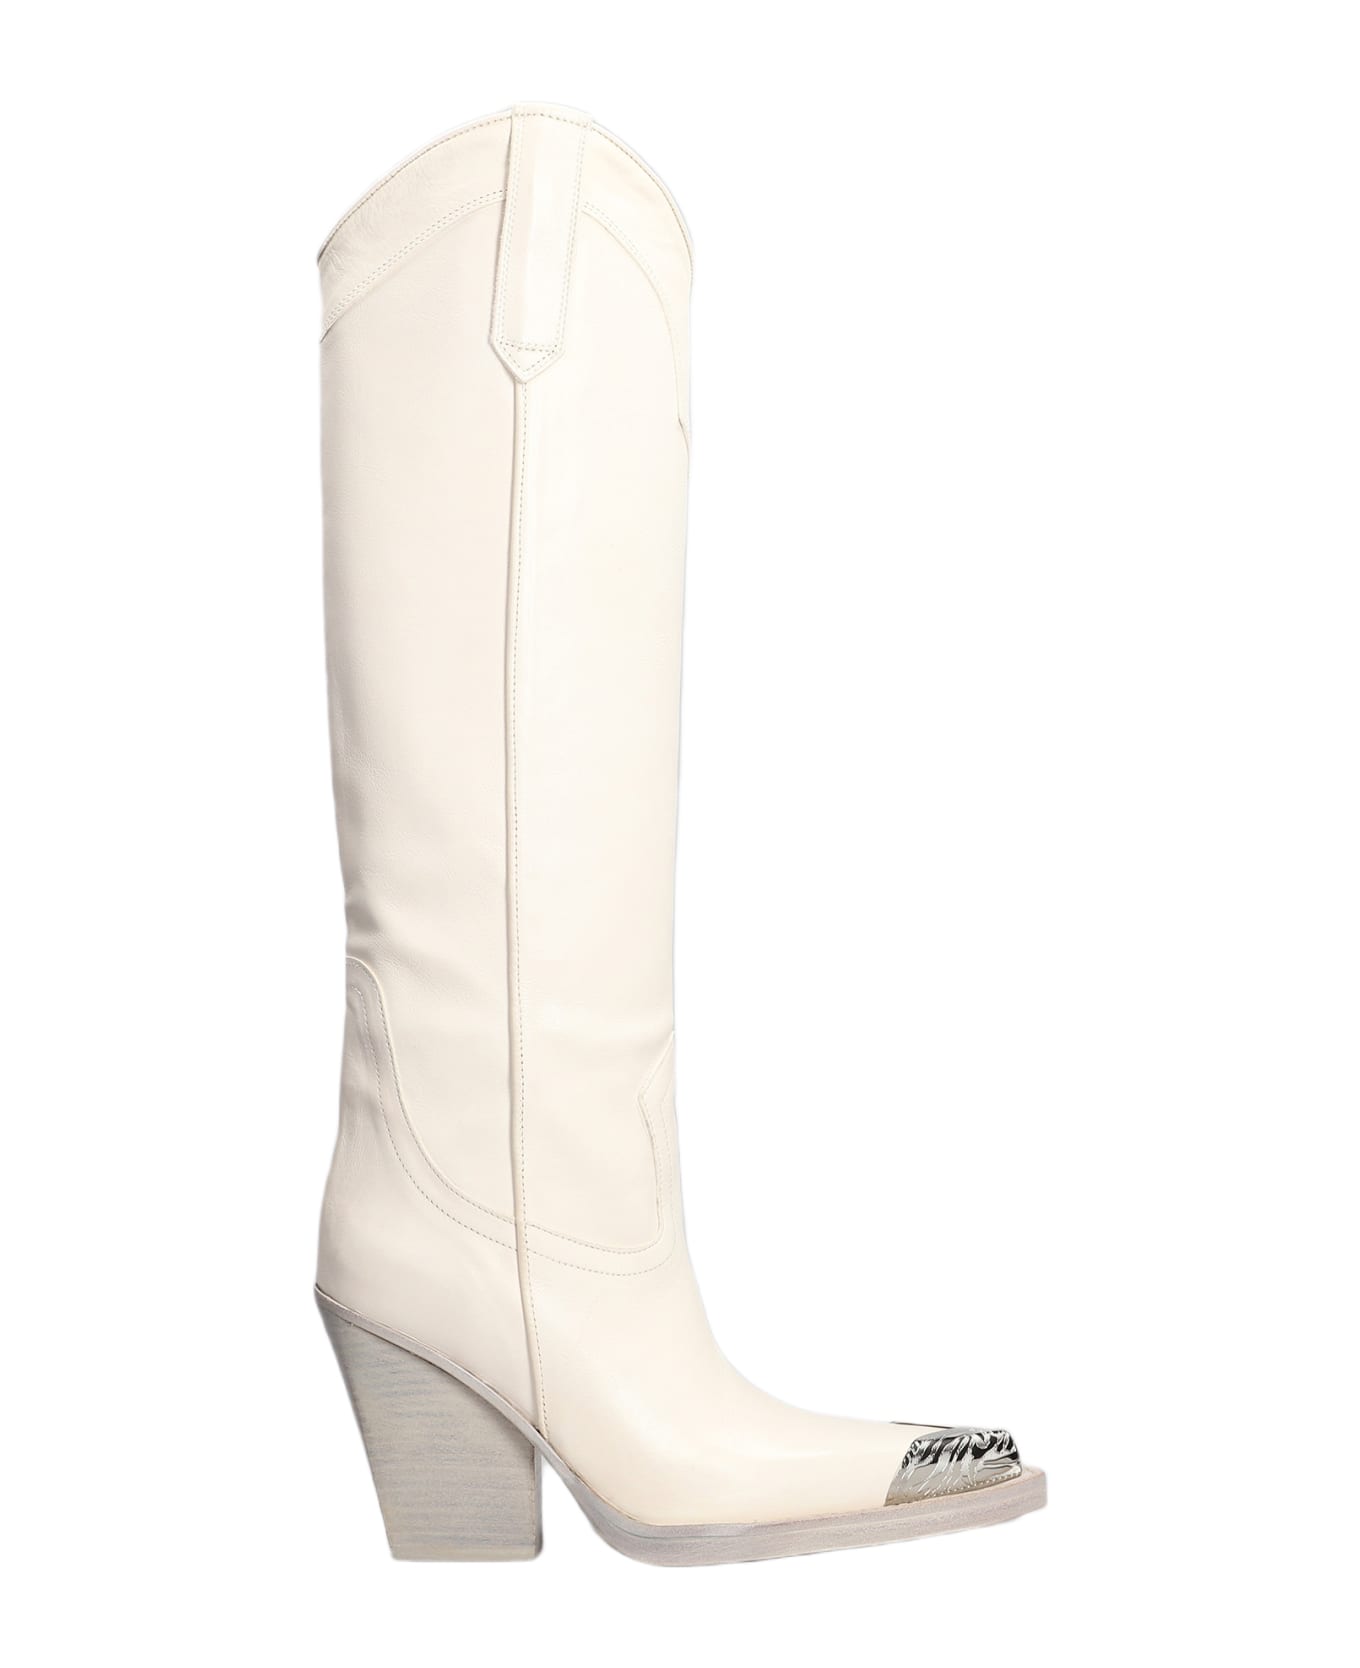 Paris Texas El Dorado Texan Boots In White Leather - white